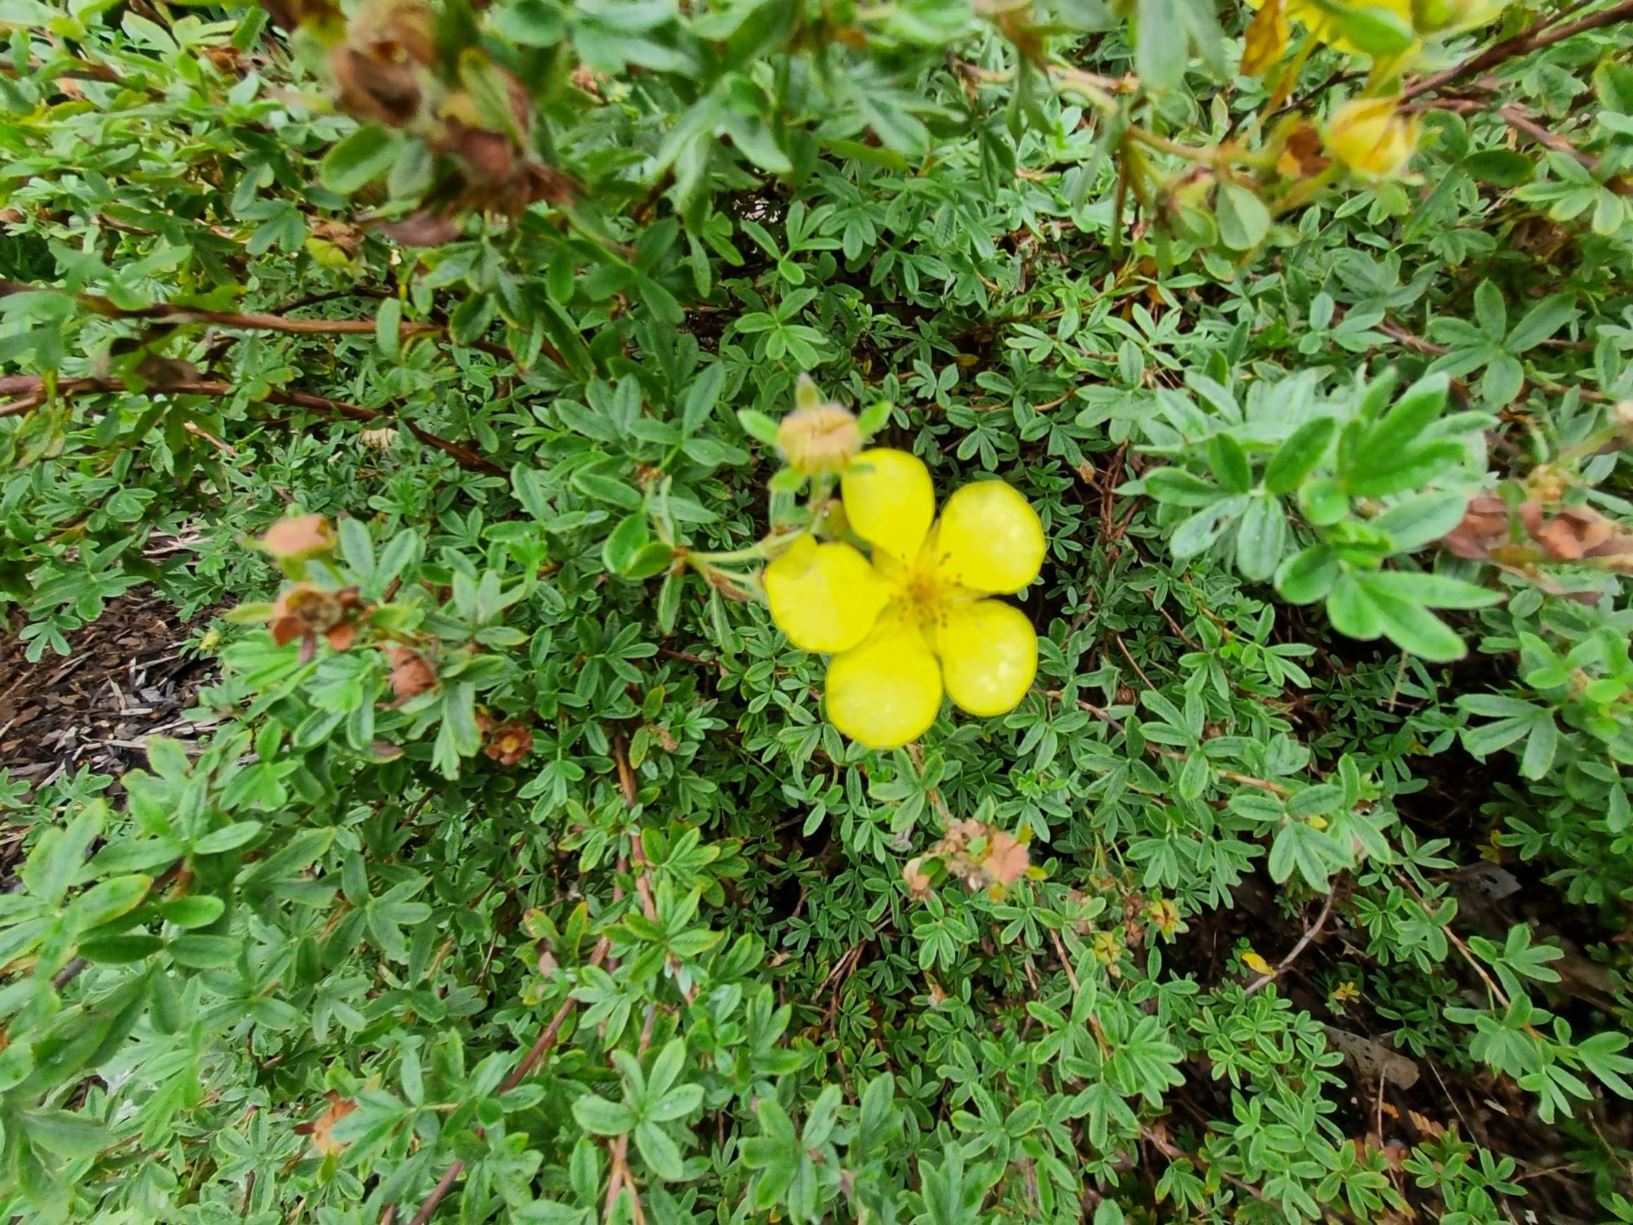 Potentilla fruticosa - shrubby cinquefoil, golden hardhack, widdy